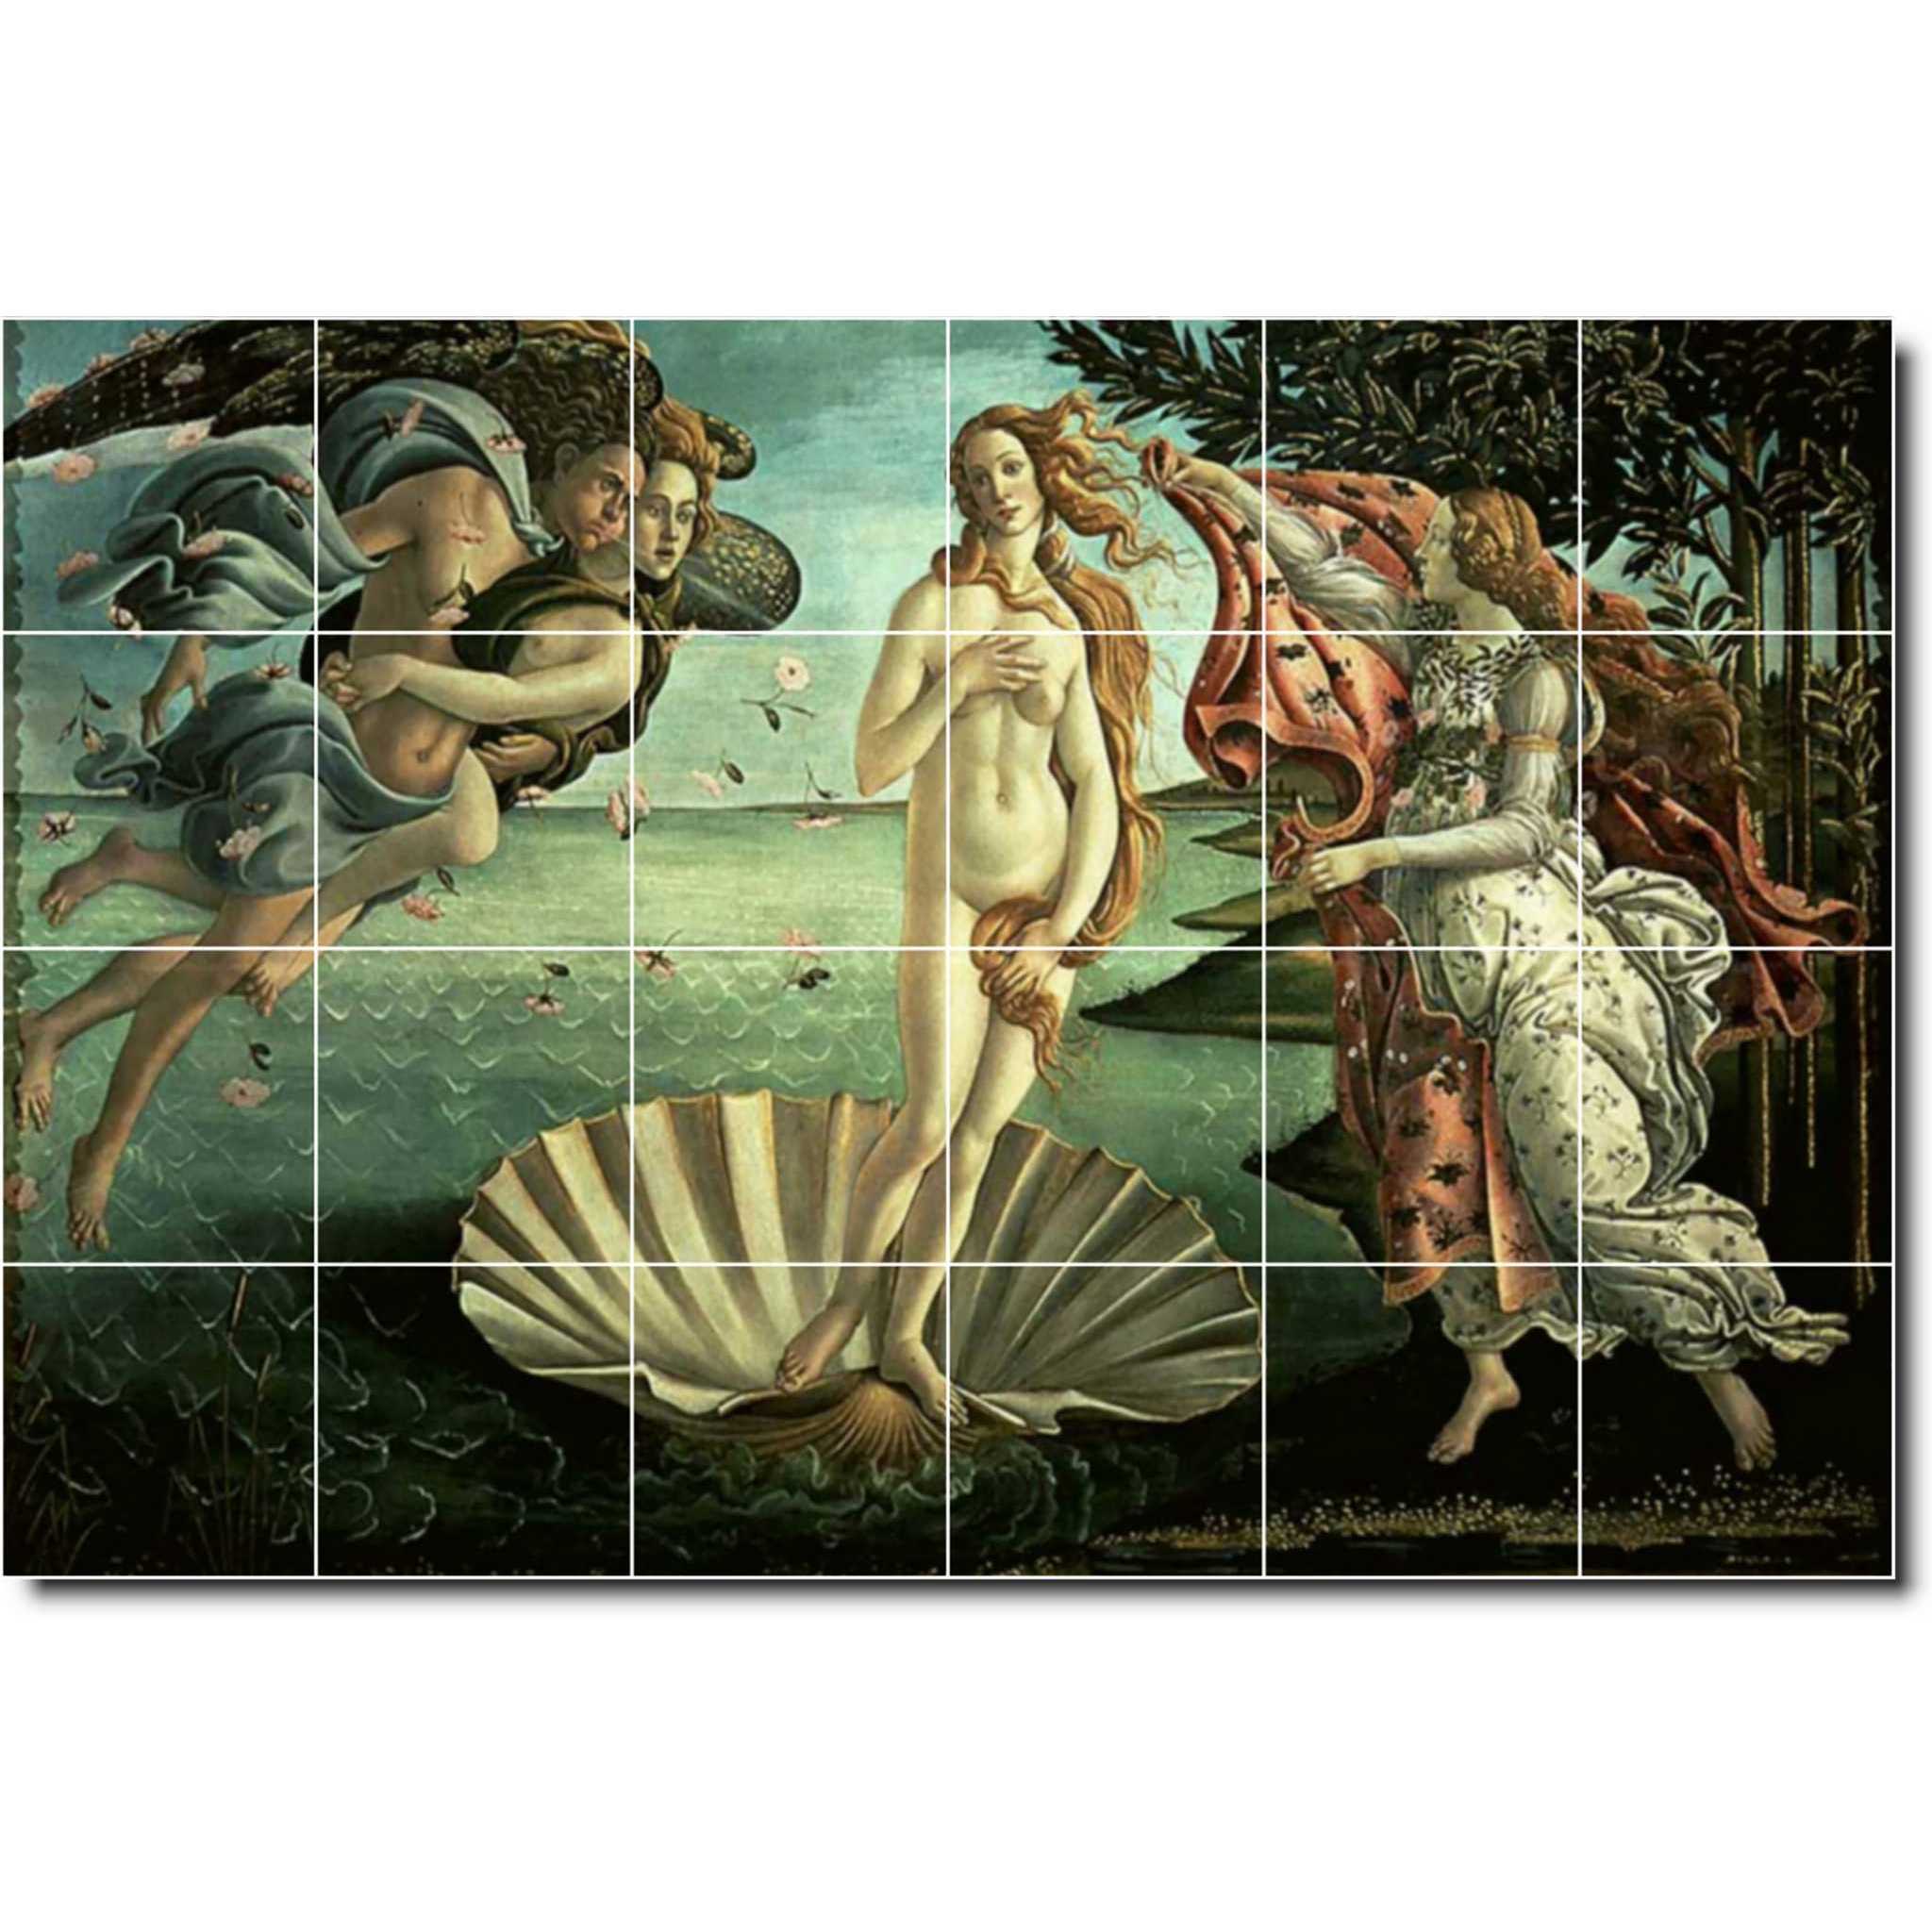 sandro botticelli mythology painting ceramic tile mural p00728